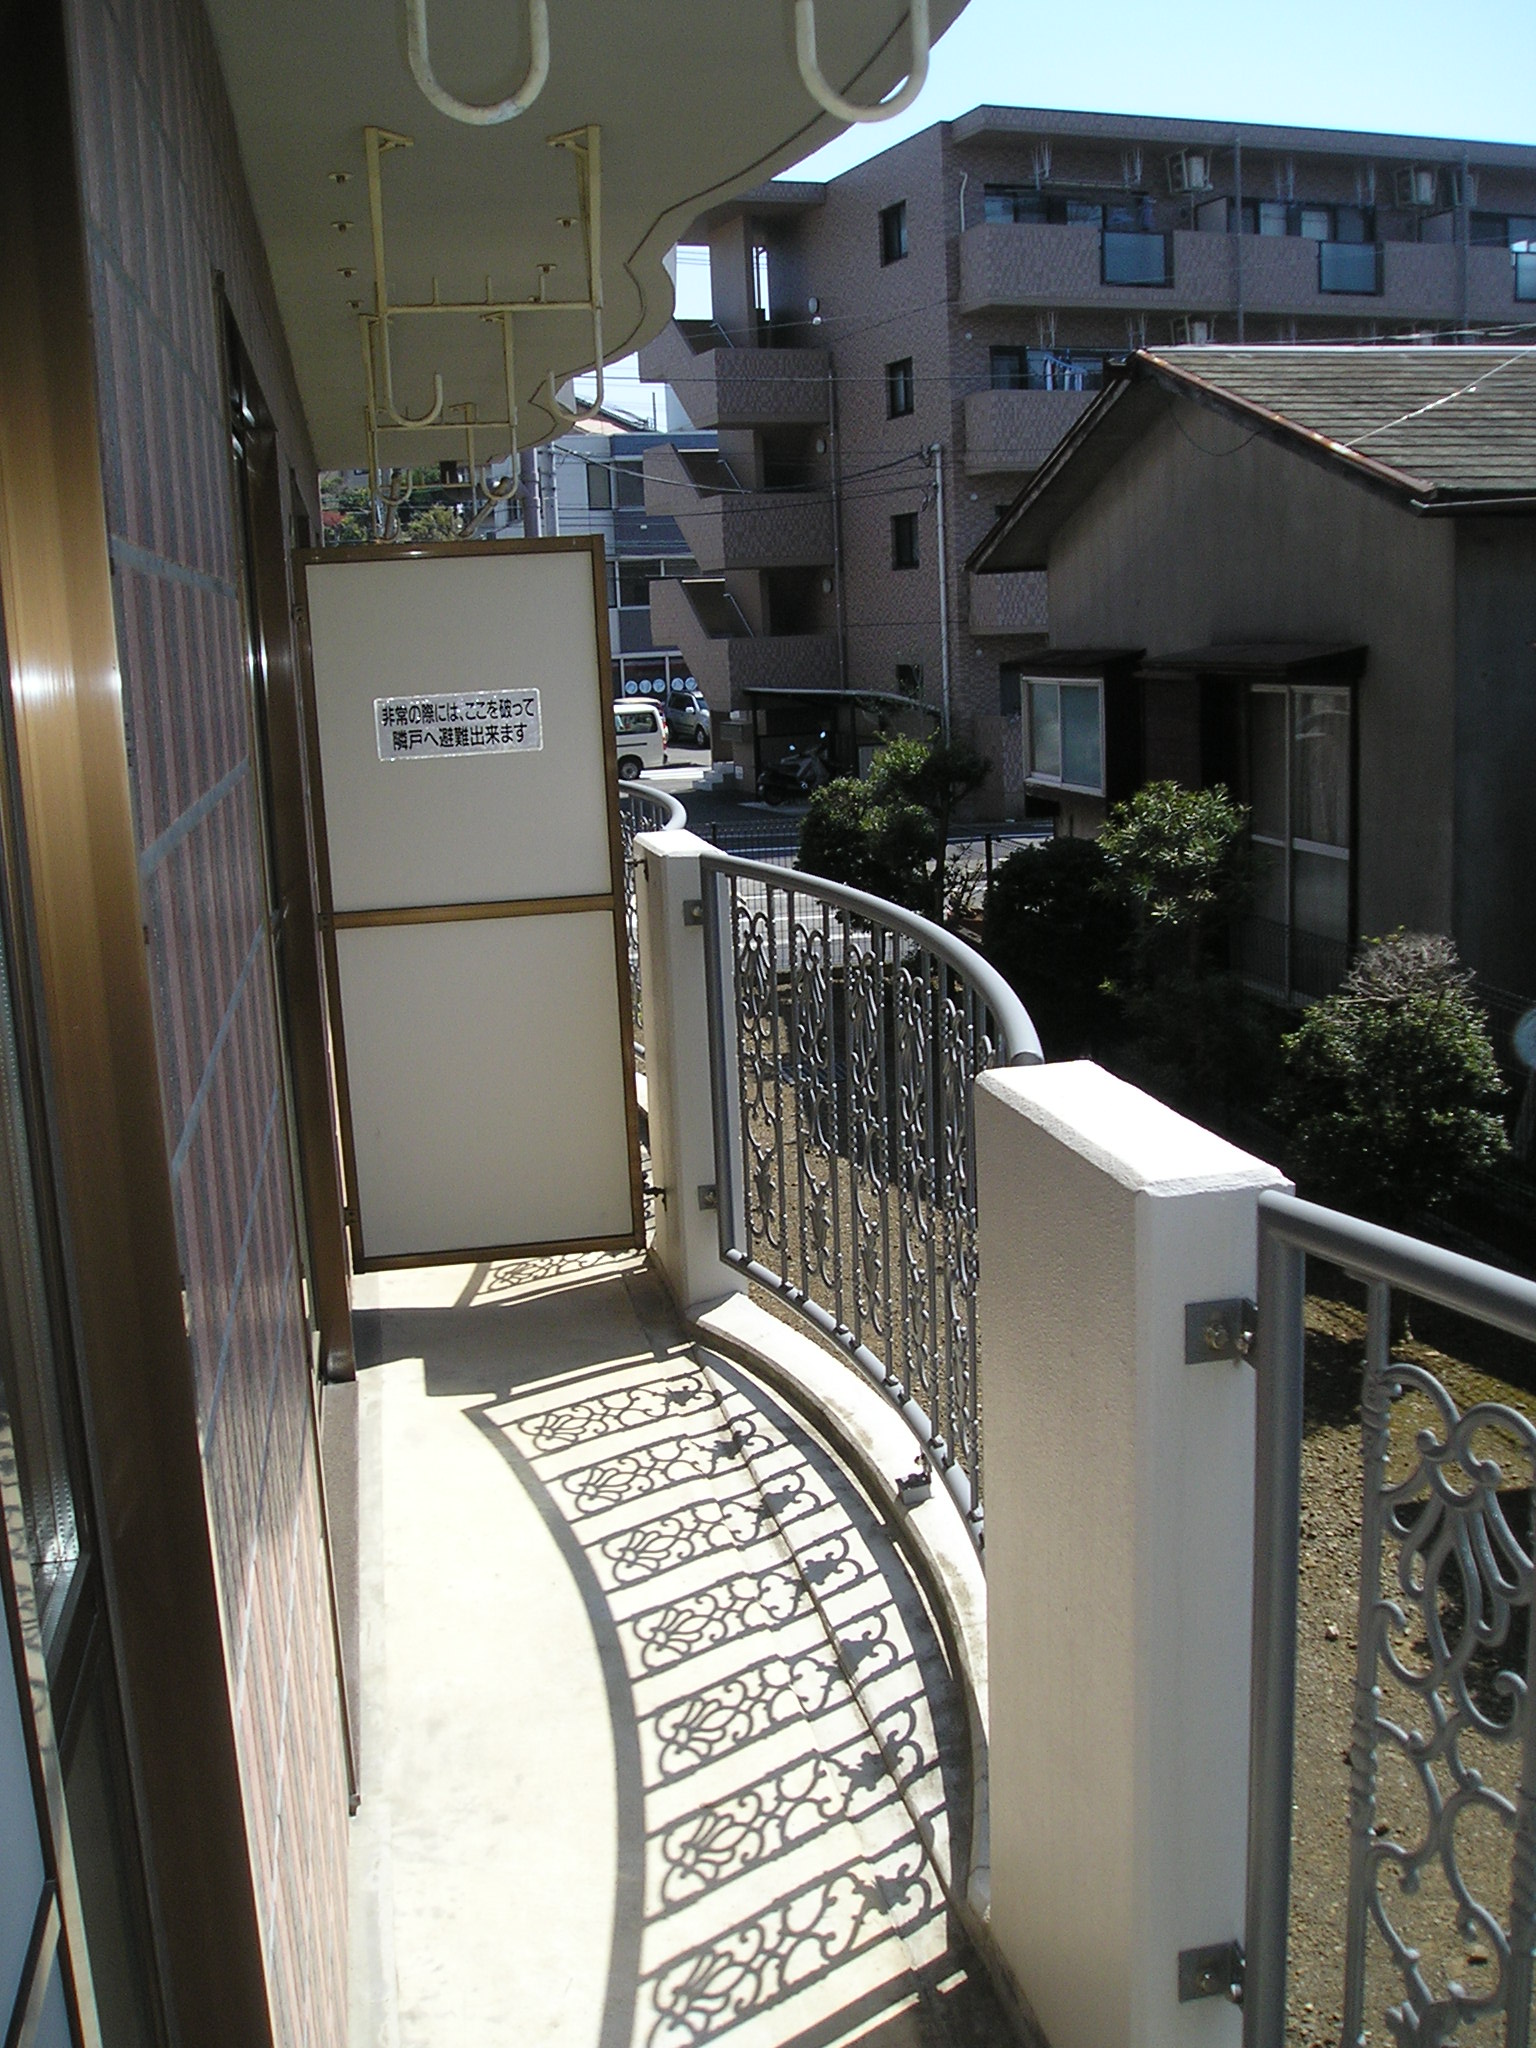 Balcony. South-facing balcony